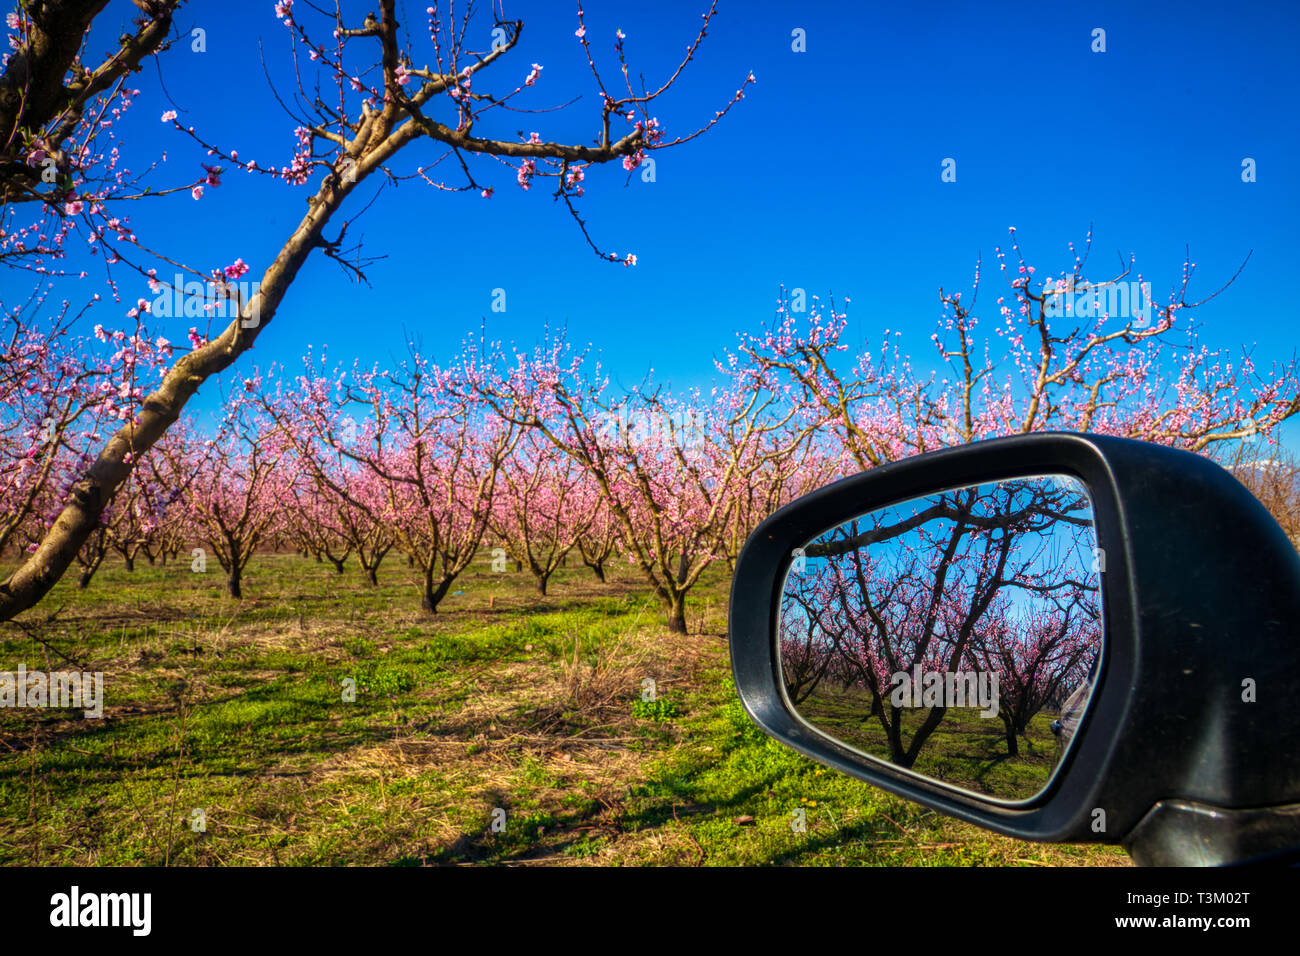 Reflexion der Obstgarten der Pfirsichbäume in in einem Auto Spiegel blühte Stockfoto